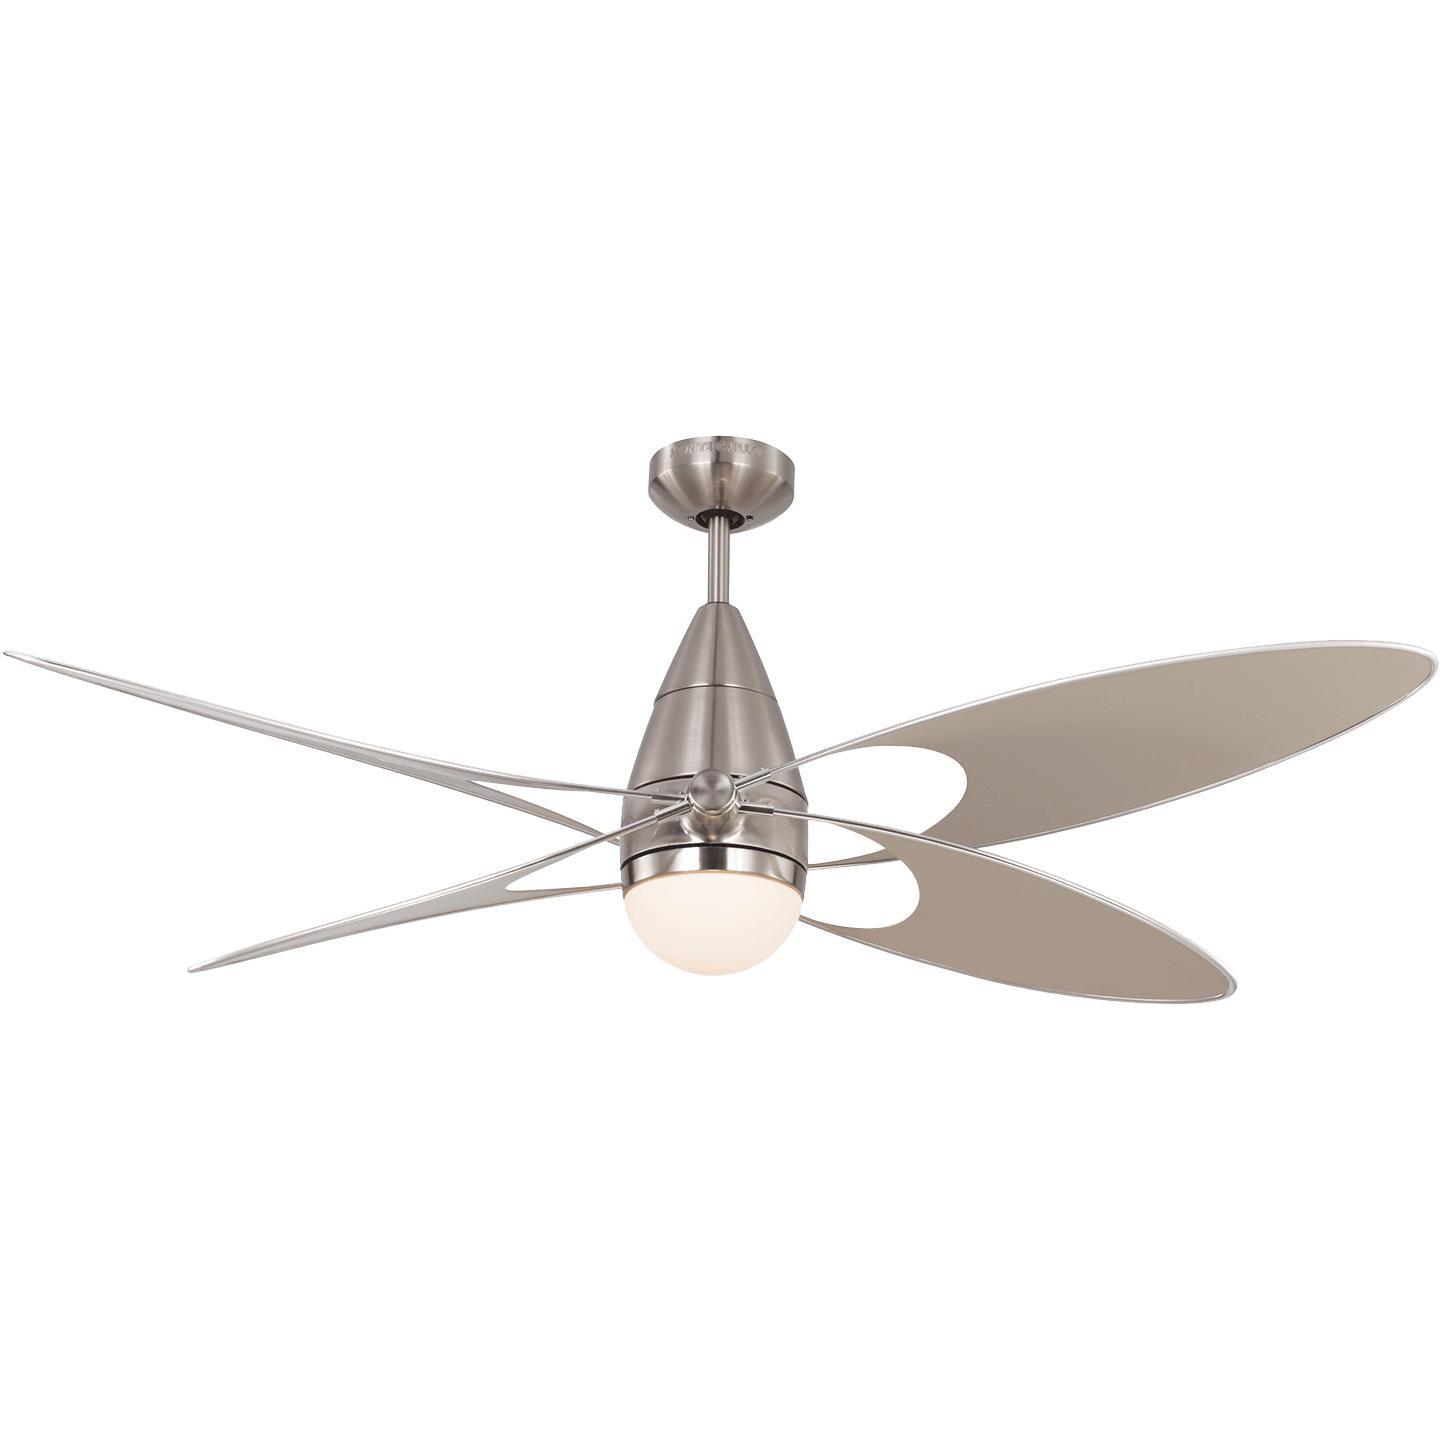 Купить Потолочный вентилятор Butterfly 54" LED Ceiling Fan в интернет-магазине roooms.ru